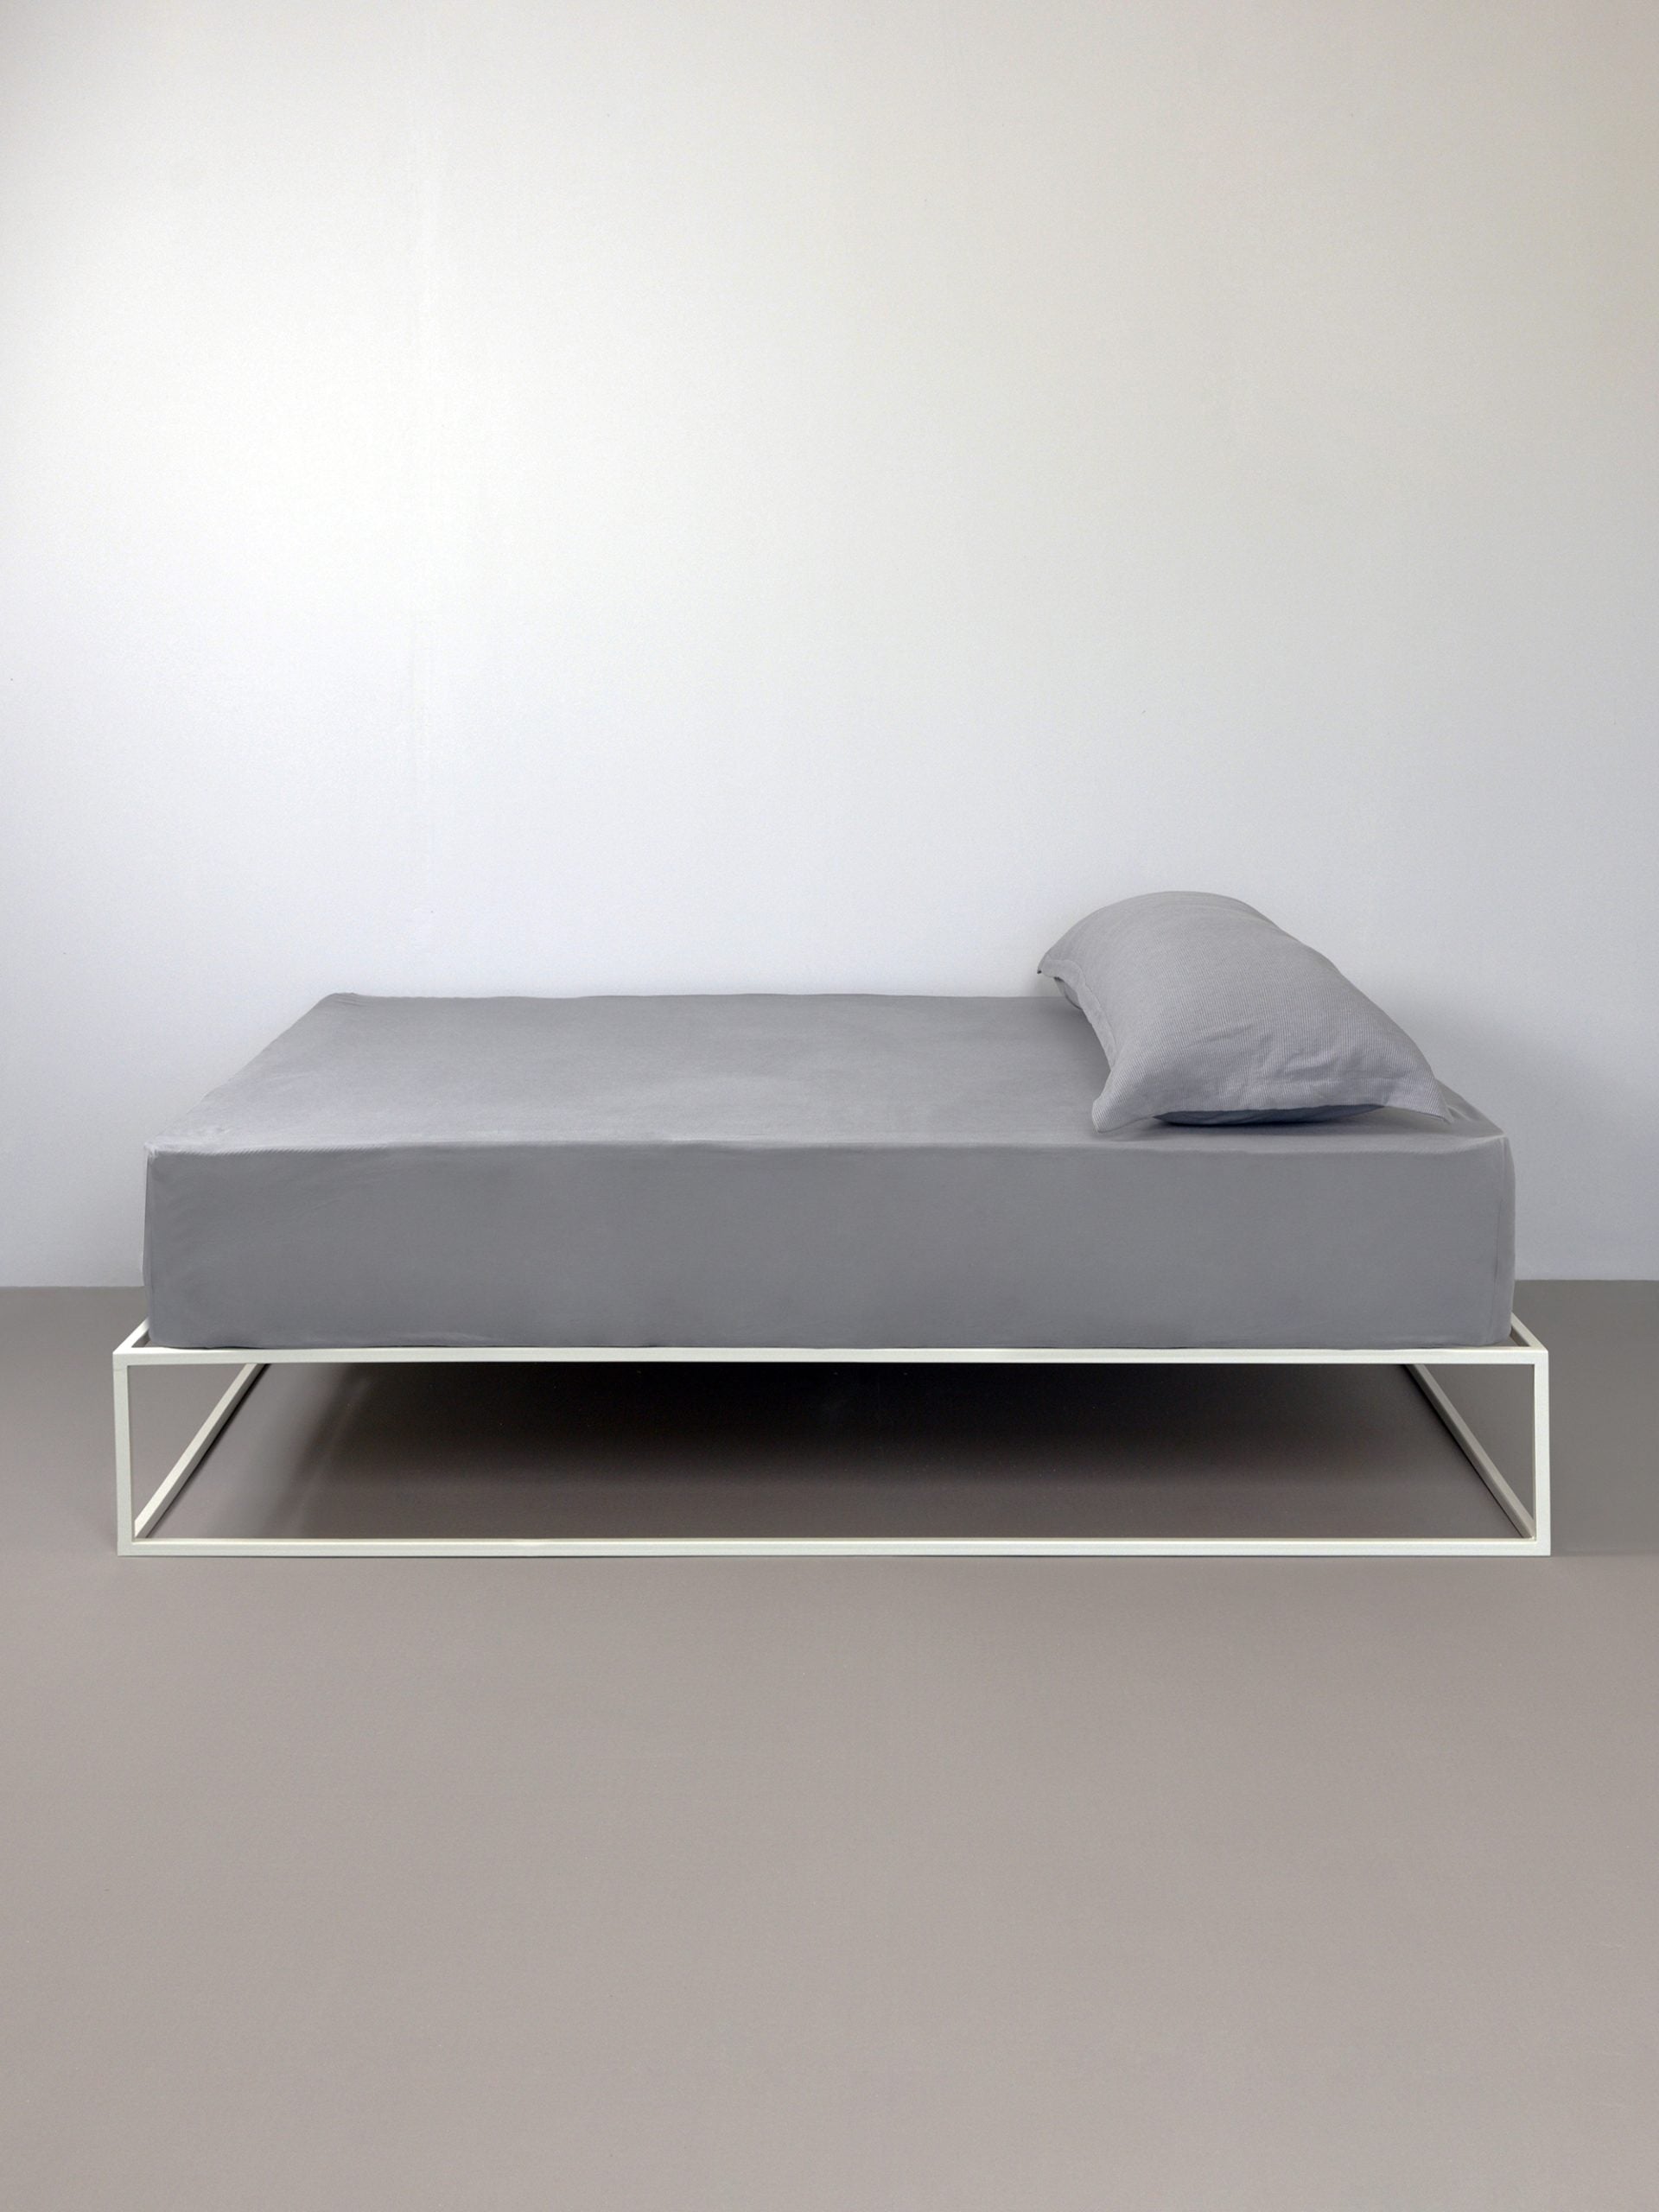 מיטת ברזל לבנה עם סדין, כרית וציפית לכרית ארוכה בצבע אפור בחדר עם קירות אפורים